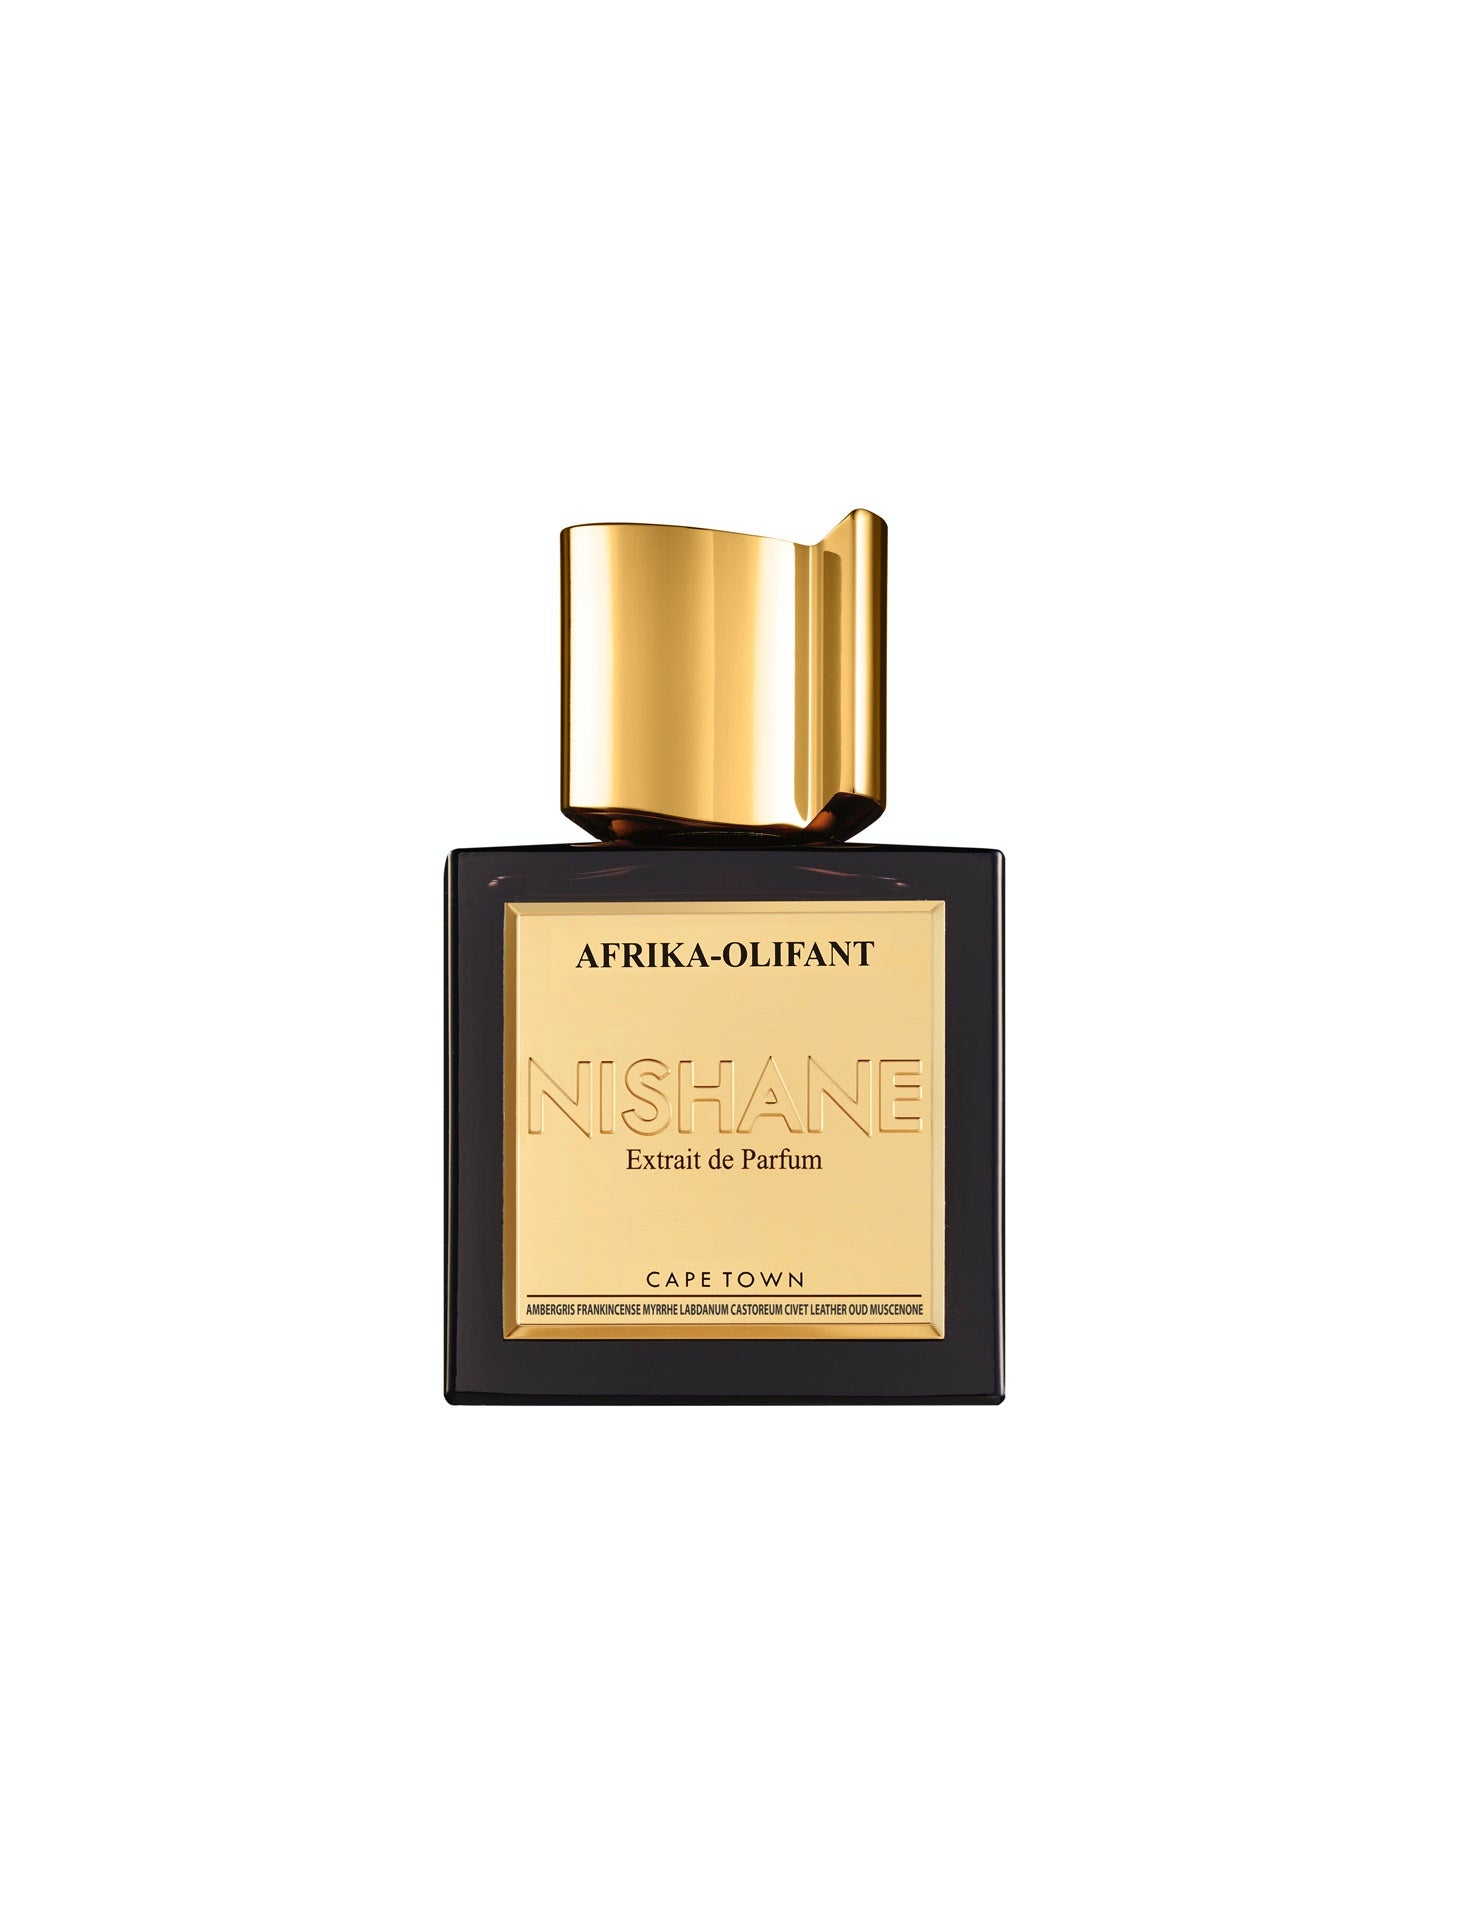 Nishane Afrika-Olifant 50ml Extrait de Parfum